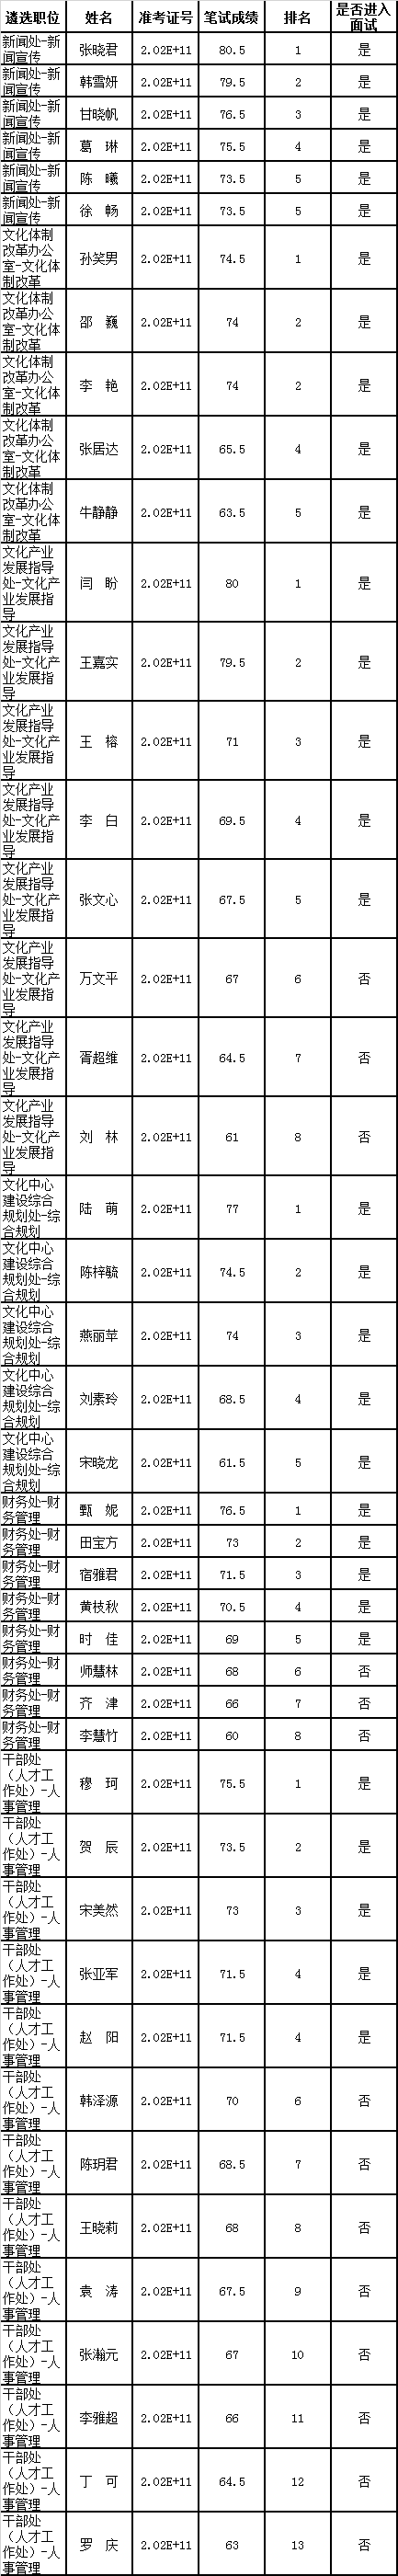 中共北京市委宣传部公开遴选公务员笔试成绩.png